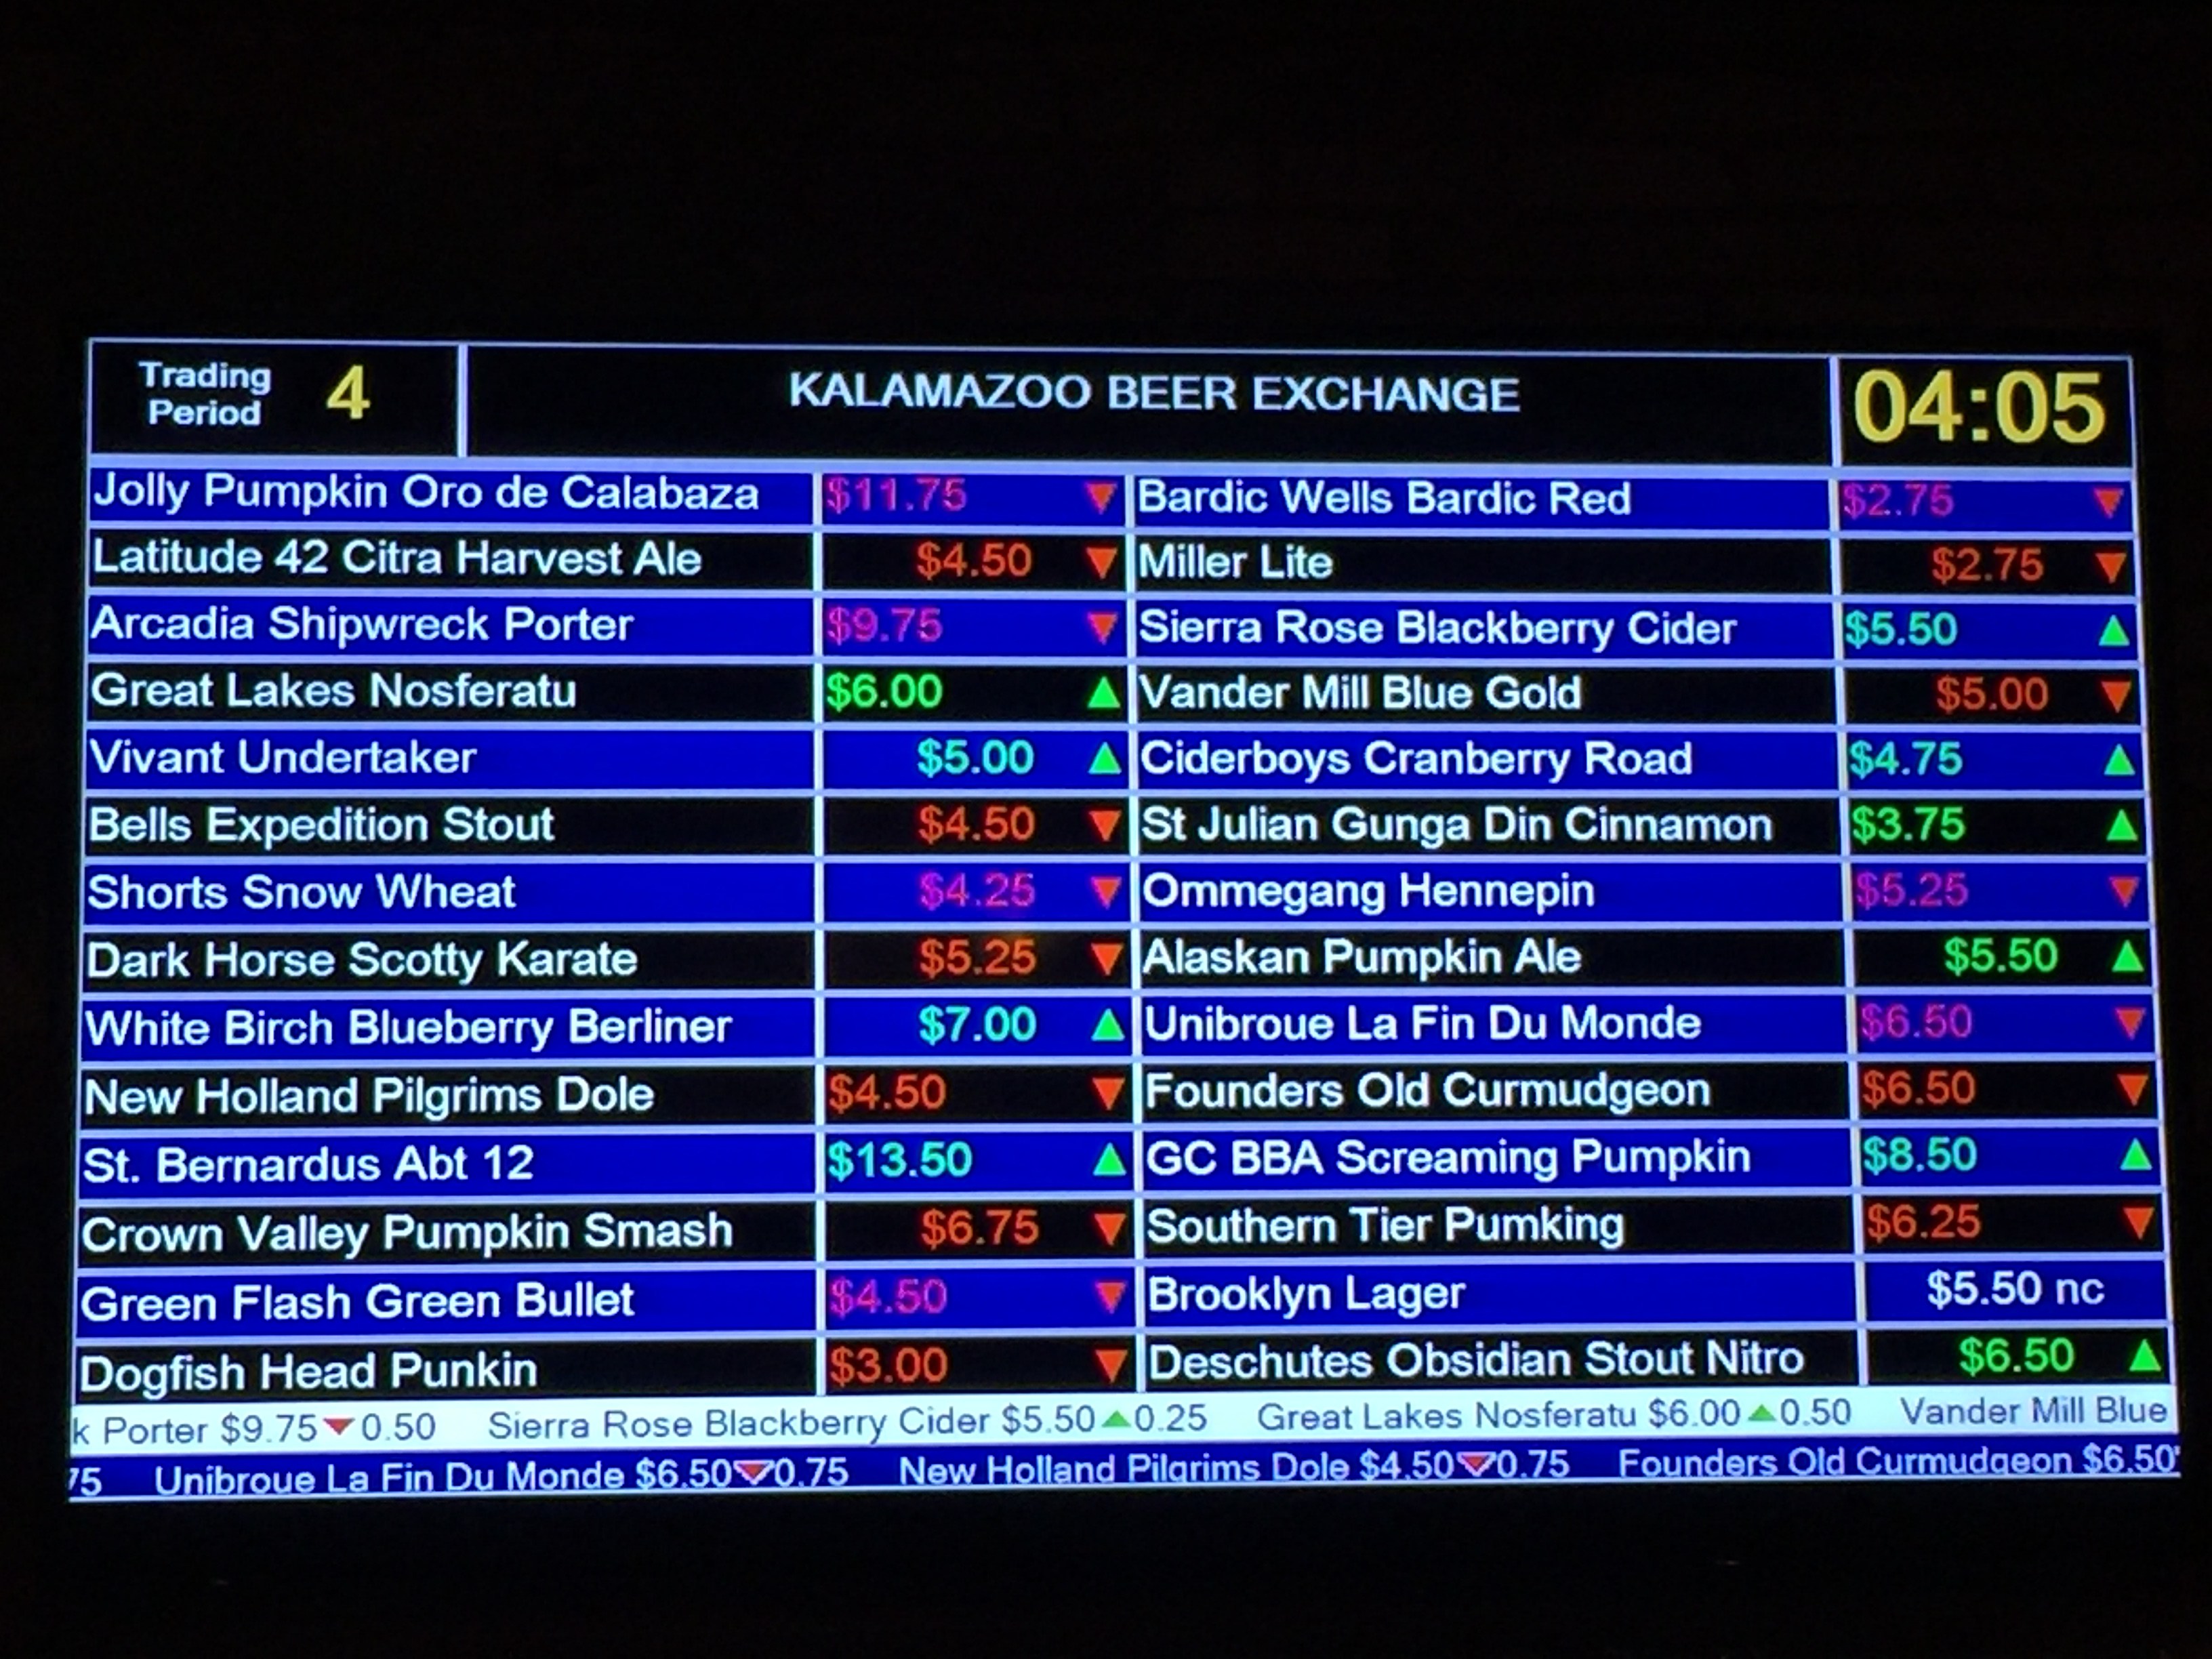 the kalamazoo beer exchange